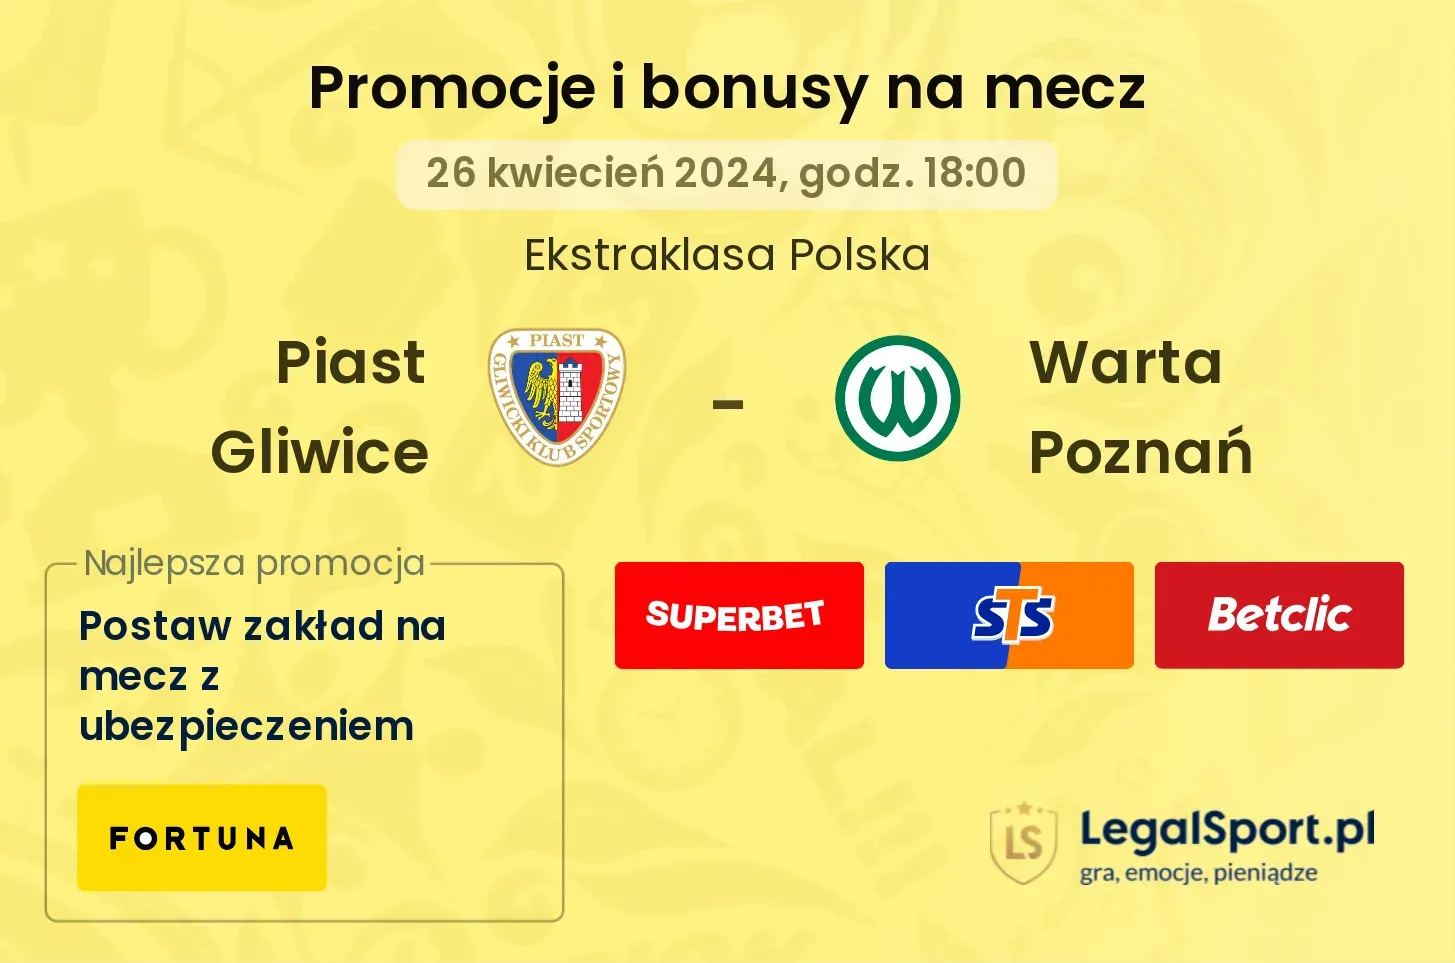 Piast Gliwice - Warta Poznań promocje bonusy na mecz